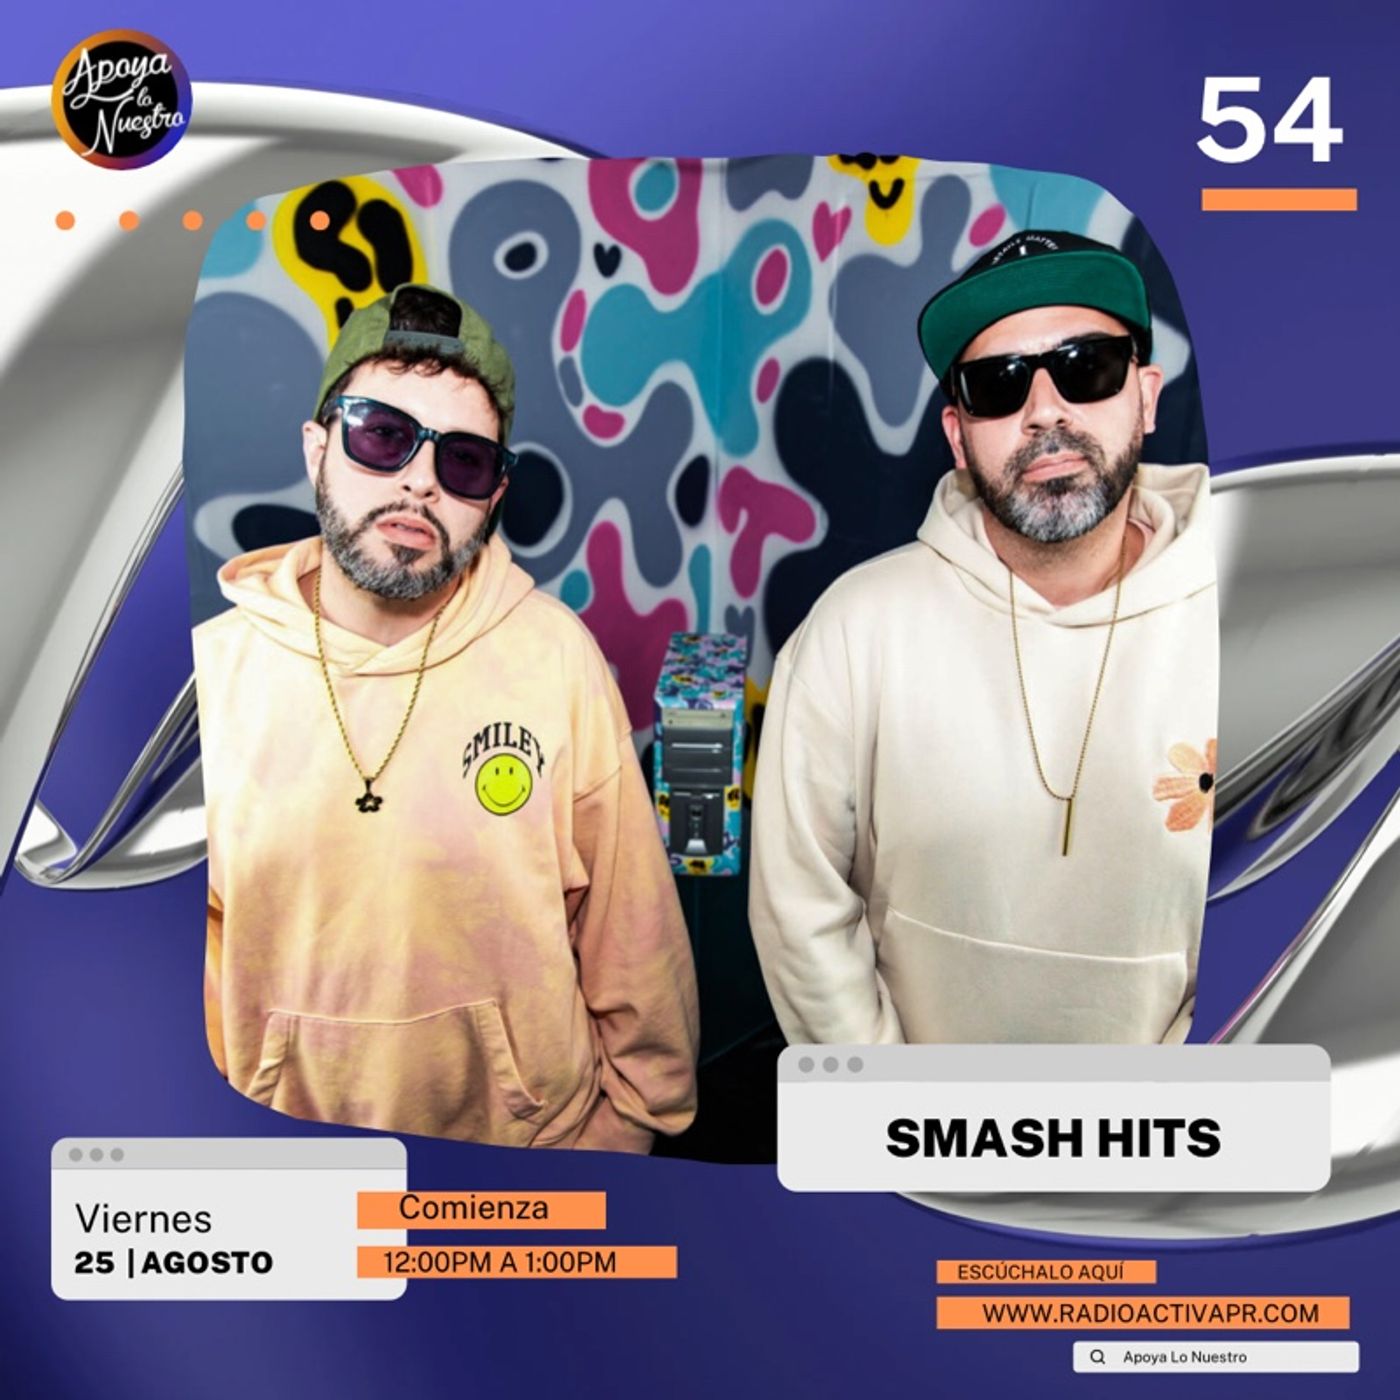 Apoya Lo Nuestro | SMASH HITS estrena su álbum "You Know We Got That Sauce" ft. Mistel Kind & Super Solo